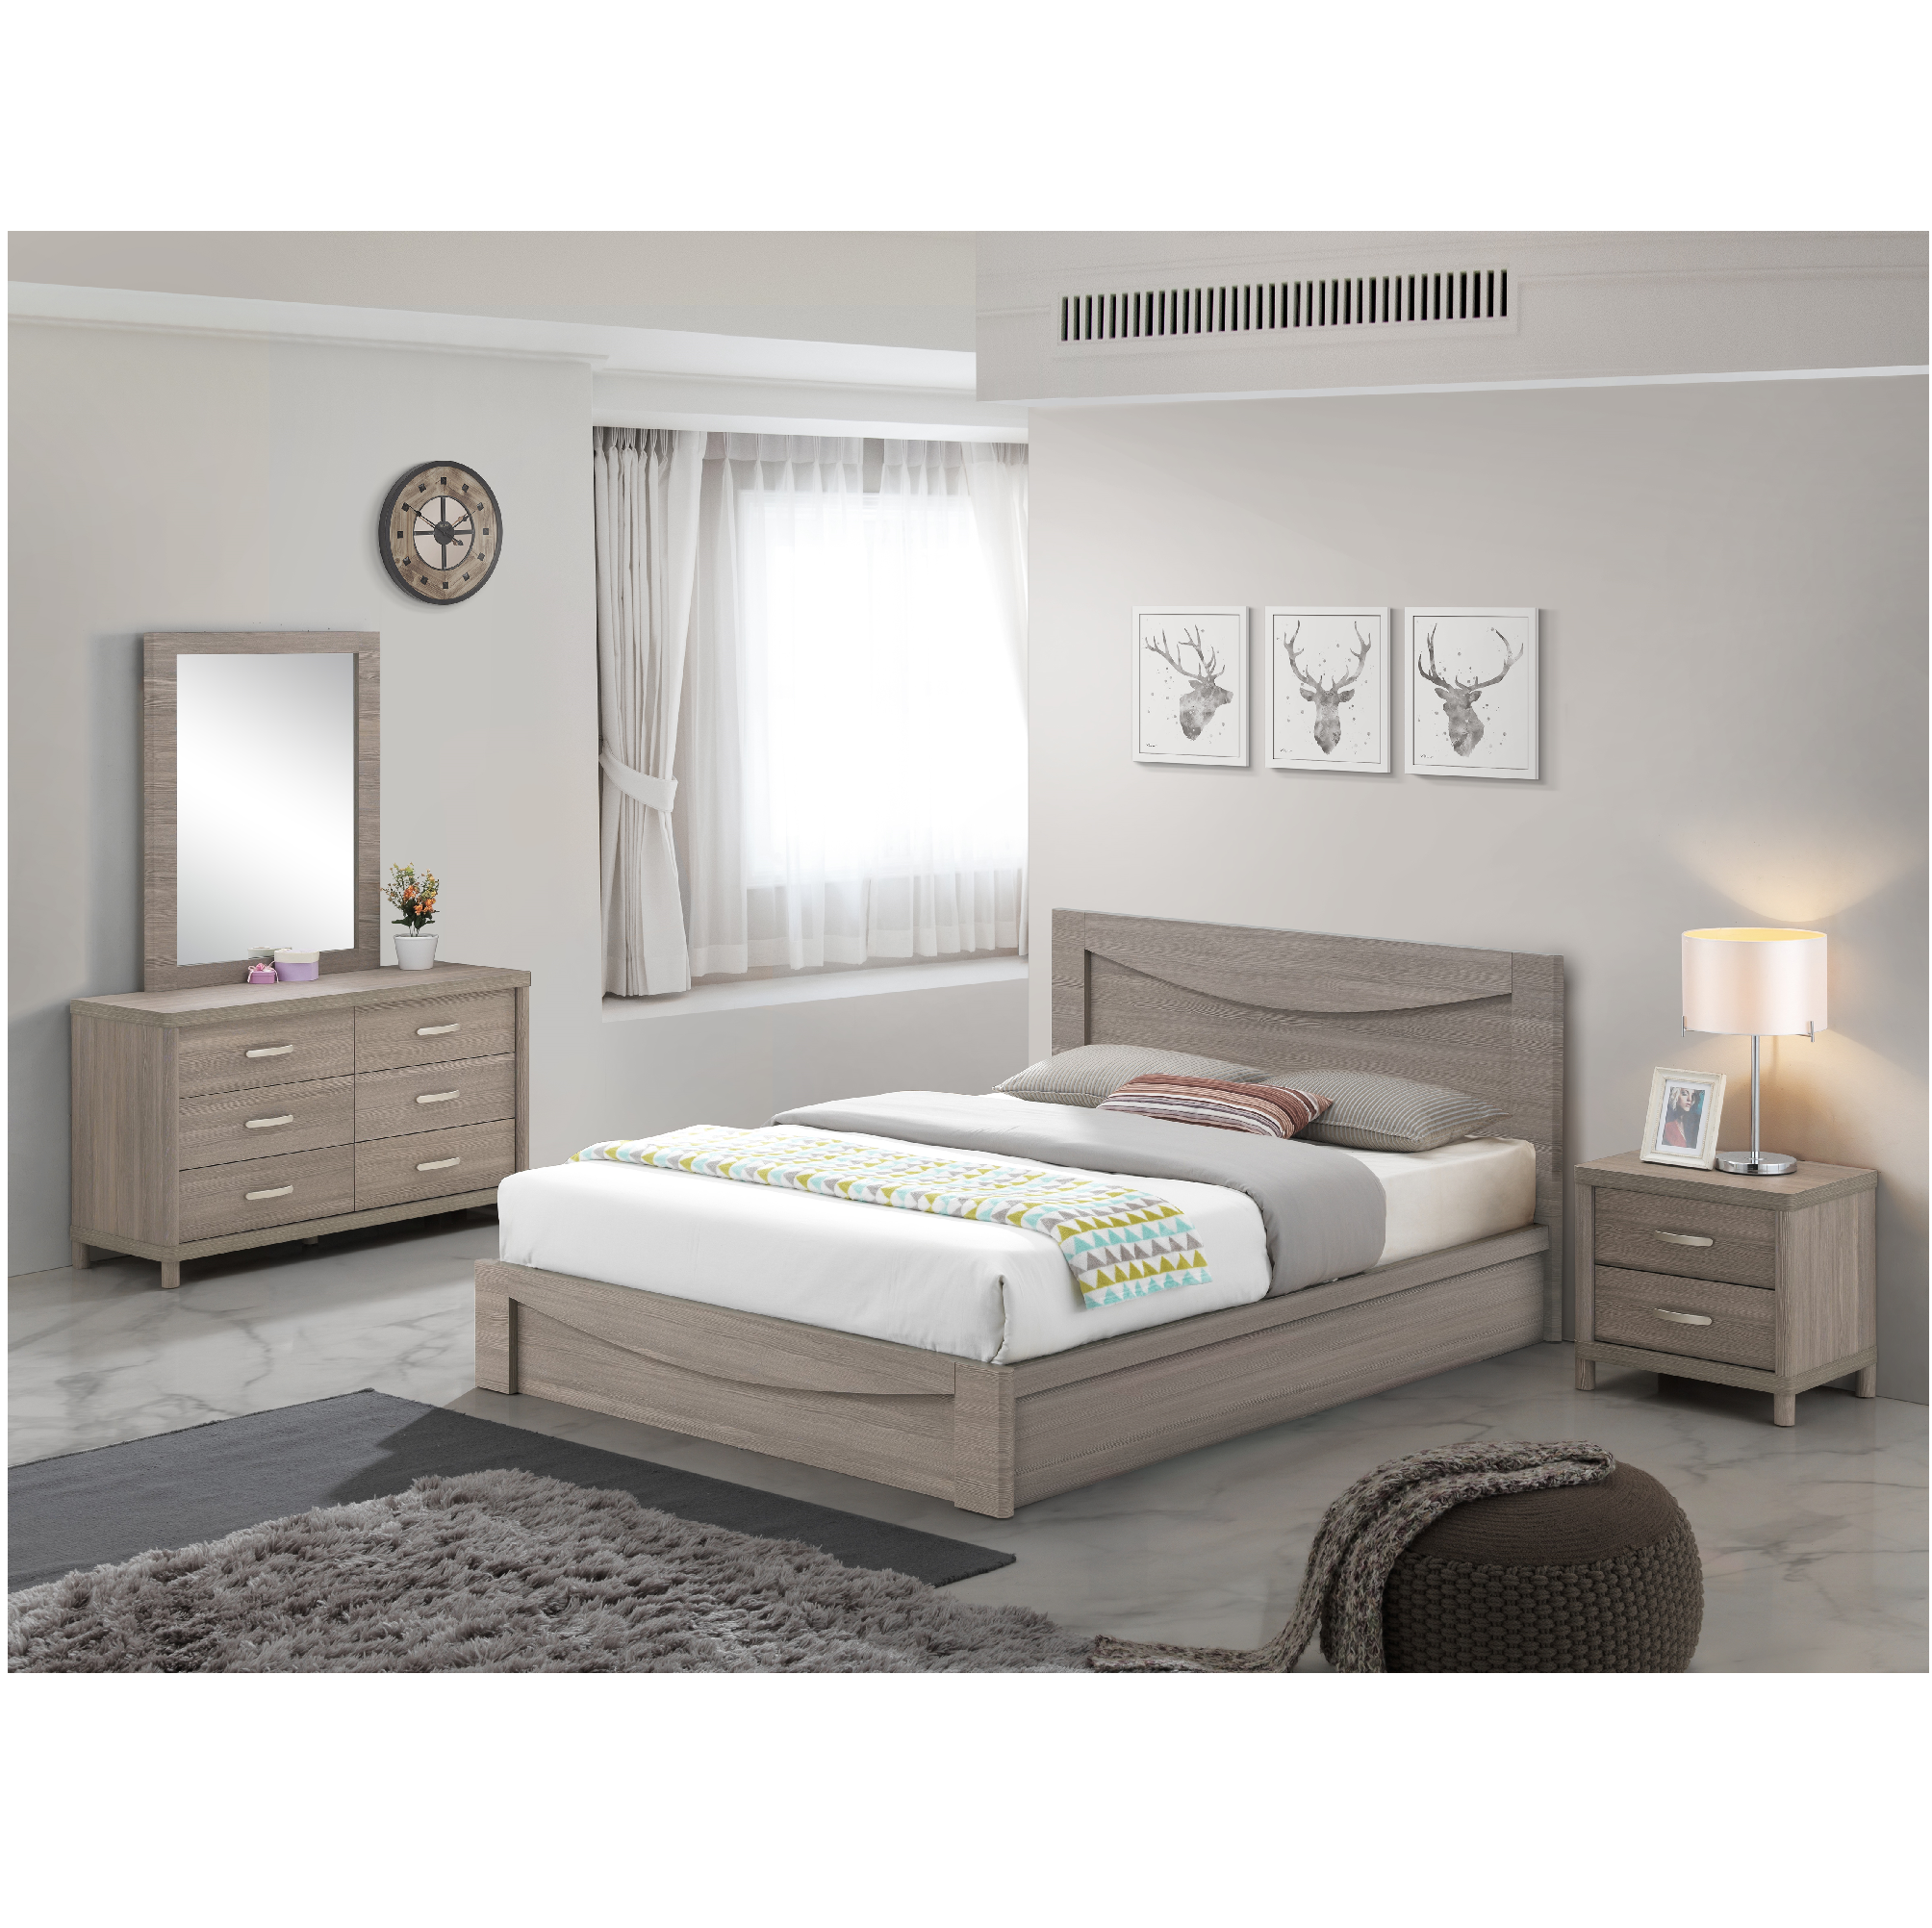 V5 Full Bed + Dresser + Mirror